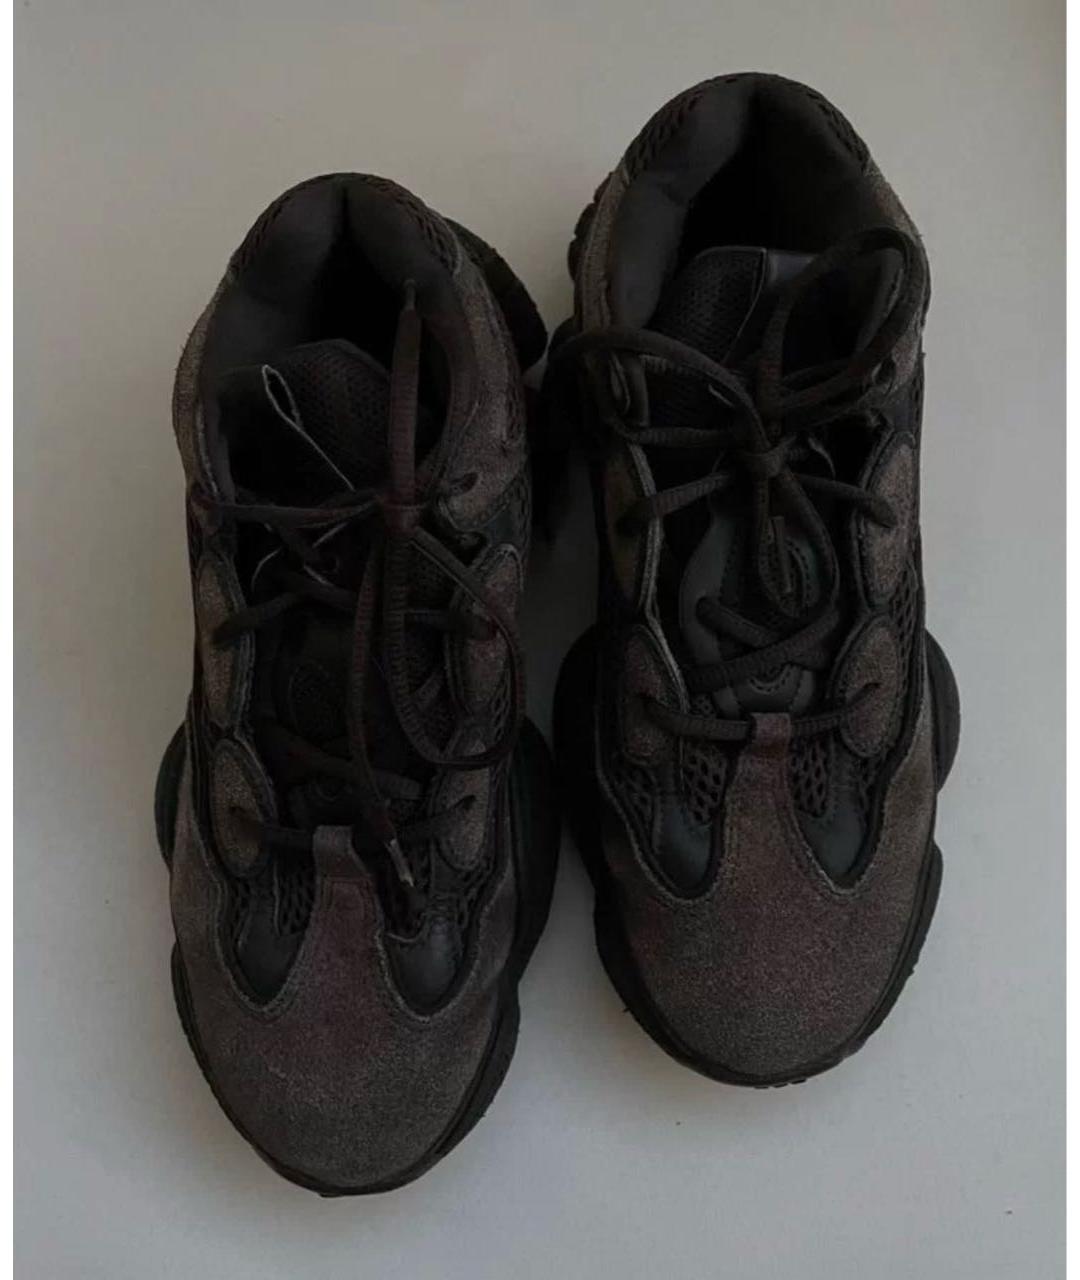 ADIDAS YEEZY Черные замшевые кроссовки, фото 2